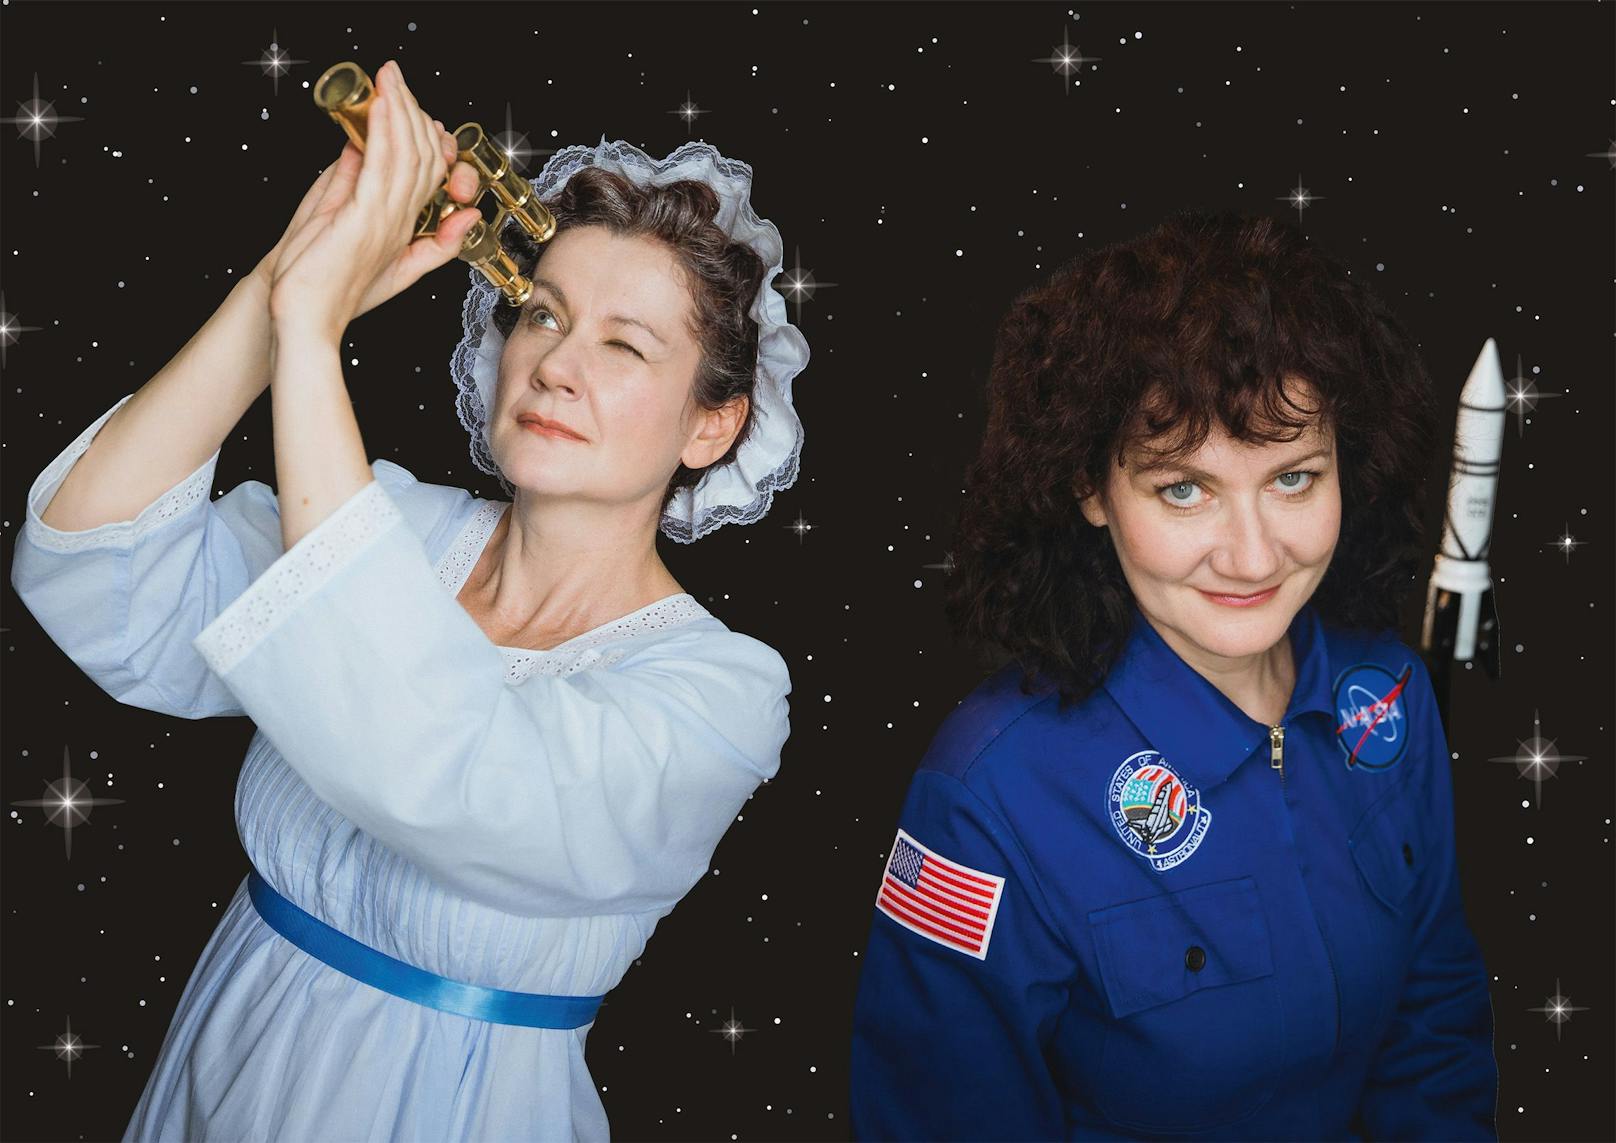 In der Theaterproduktion STERNENFRAUEN von <em>portraittheater</em> stehen die Begeisterung von Frauen für die Weltraumforschung und bedeutende Errungenschaften im Vordergrund.